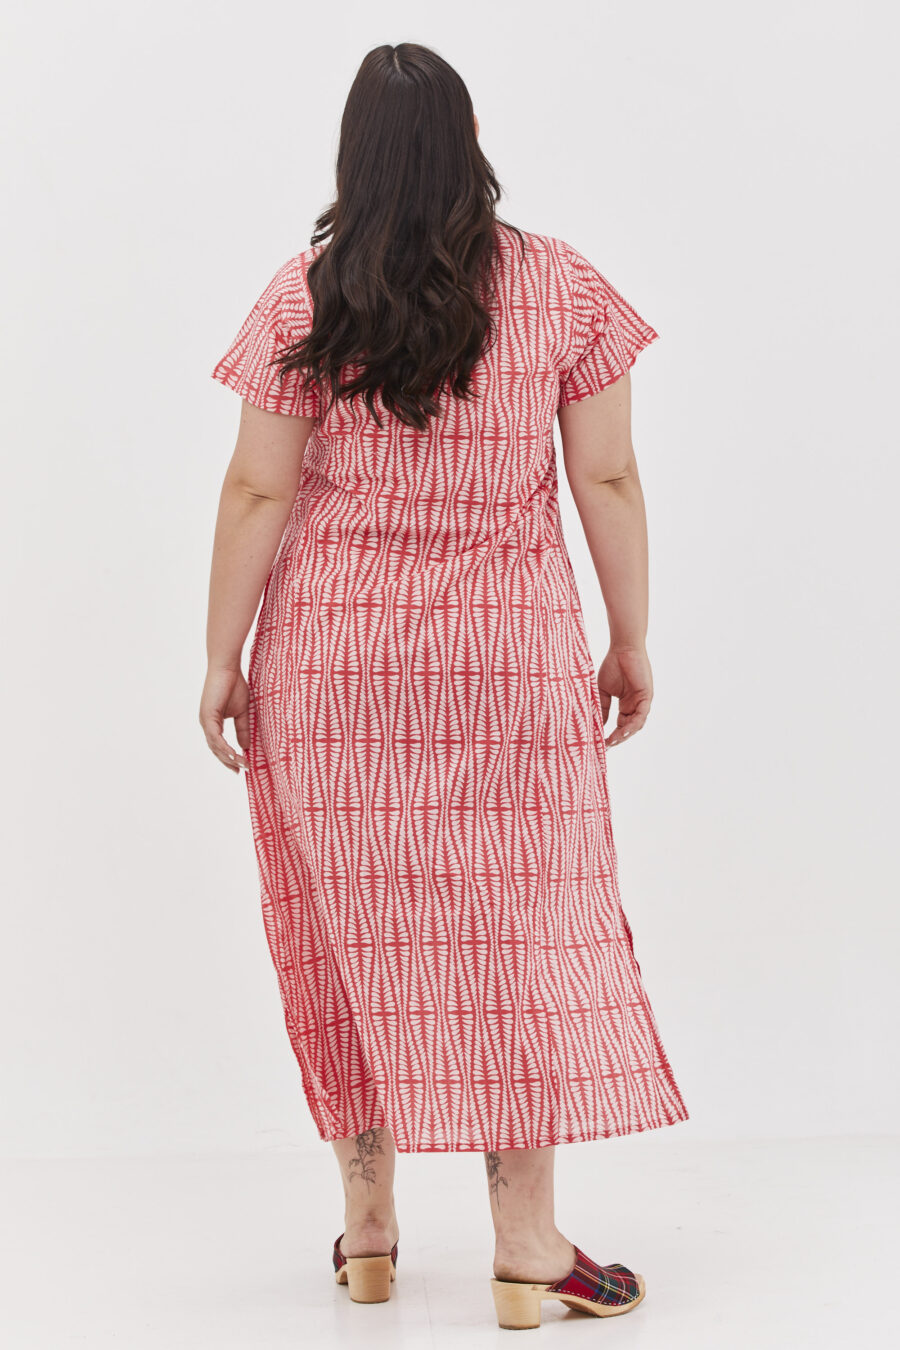 גלביה לנשים | גלבייה בעיצוב ייחודי - הדפס אגם אדום, שמלה אדומה עם הדפס גיאומטרי בצבע ורוד בהיר.